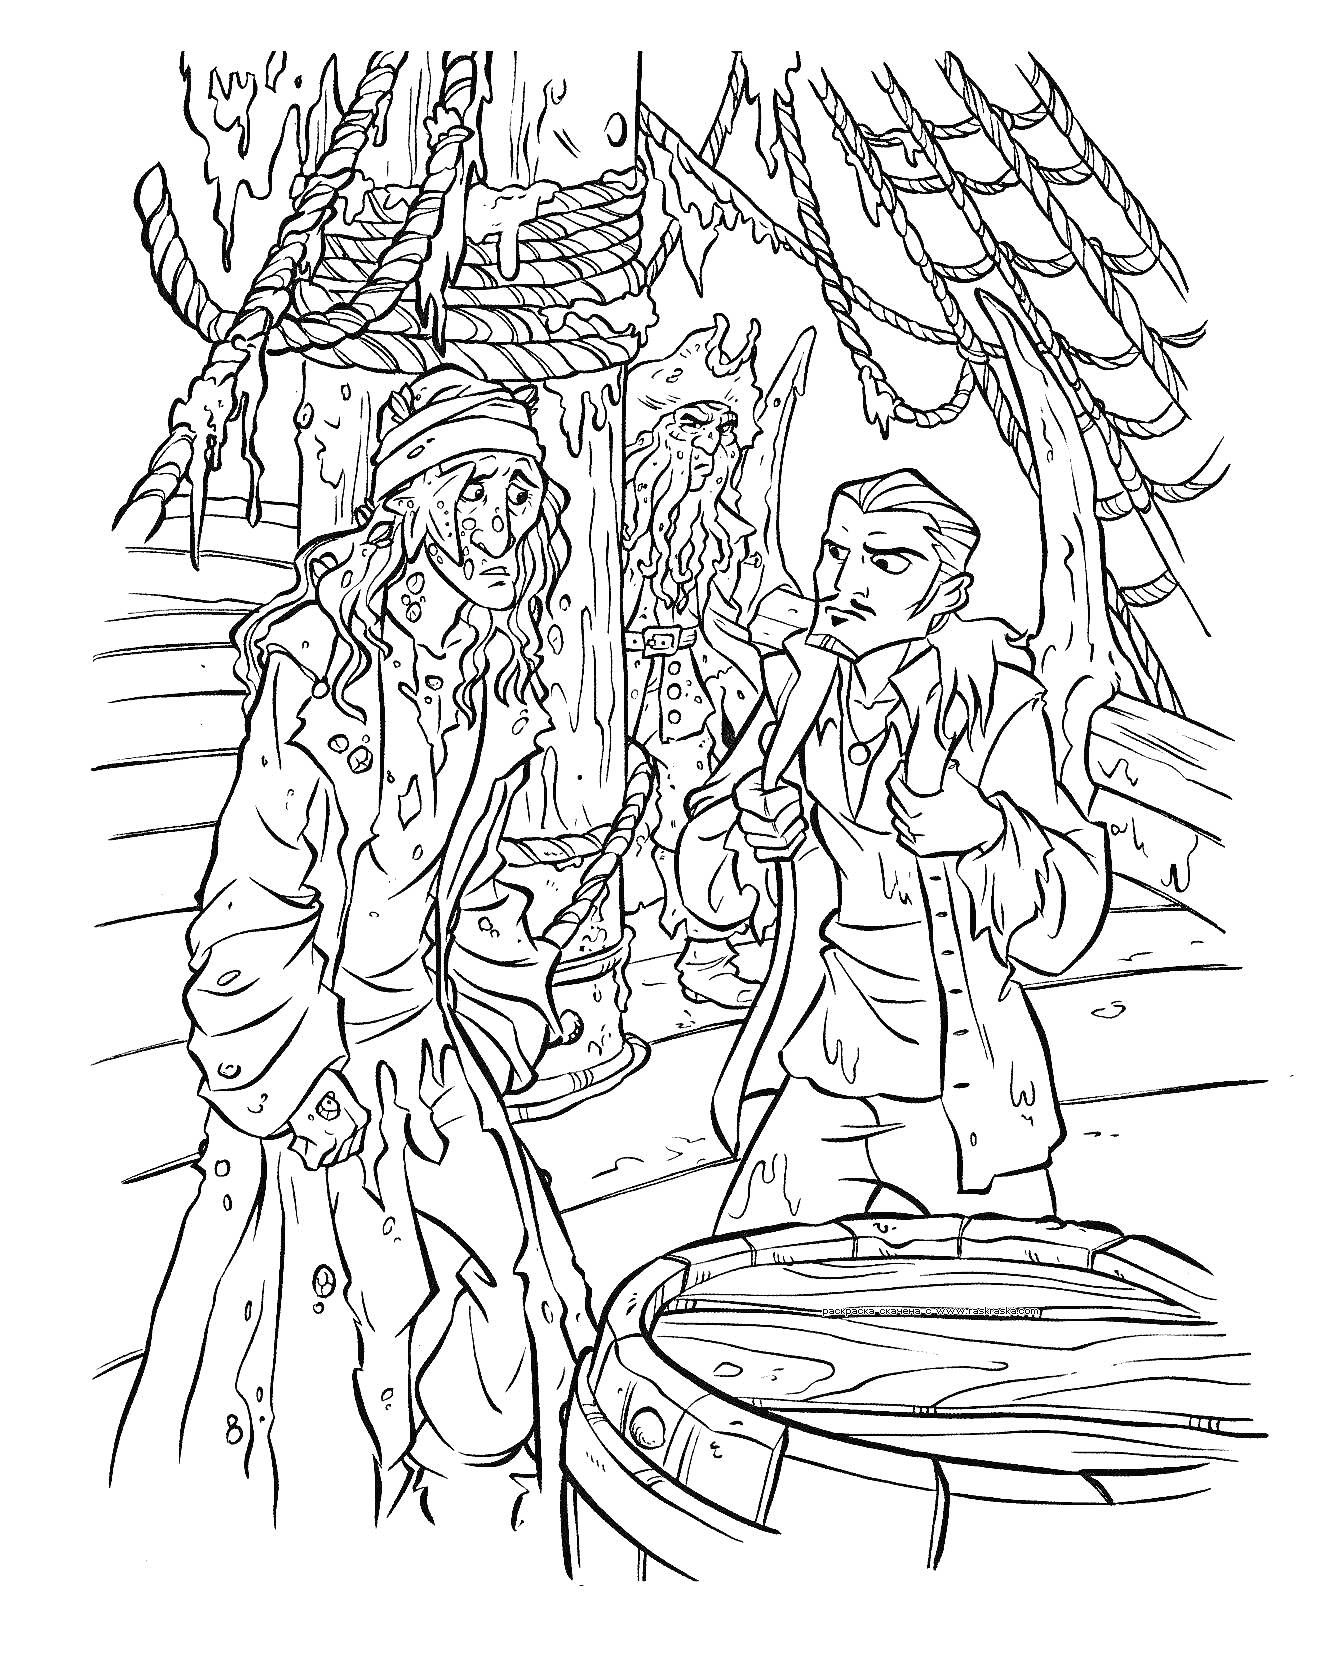 РаскраскаПираты на палубе корабля с повреждёнными фигурами, смотрящие друг на друга, и бочка на переднем плане